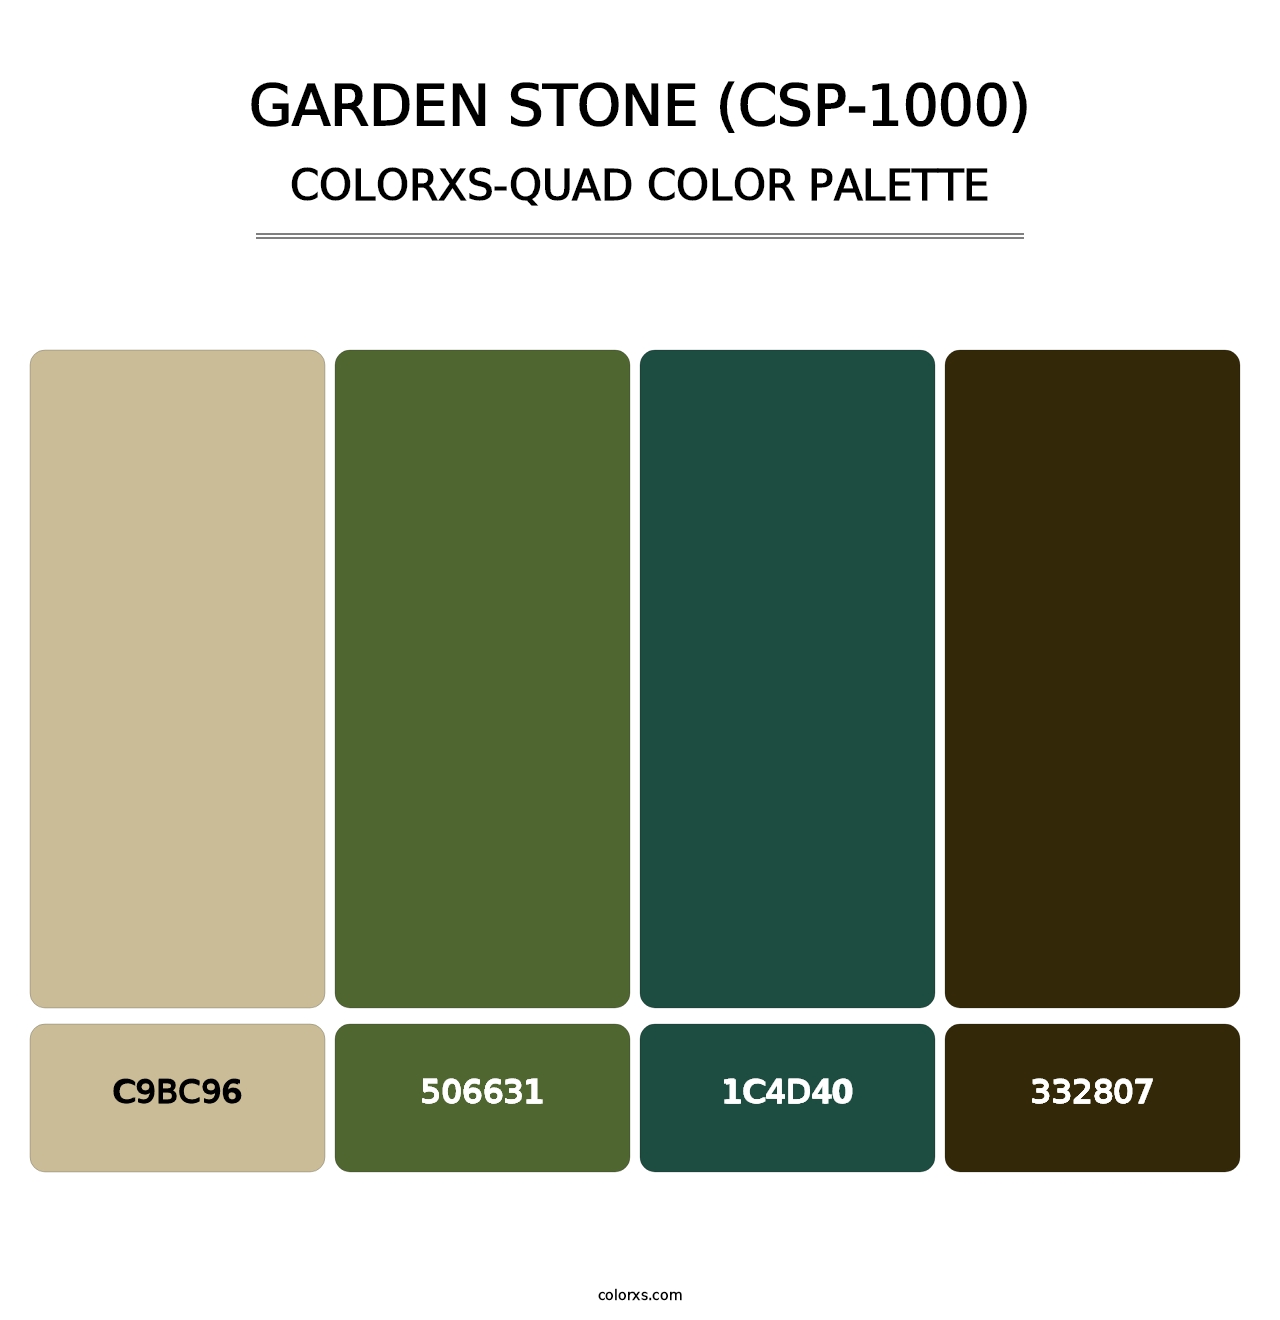 Garden Stone (CSP-1000) - Colorxs Quad Palette